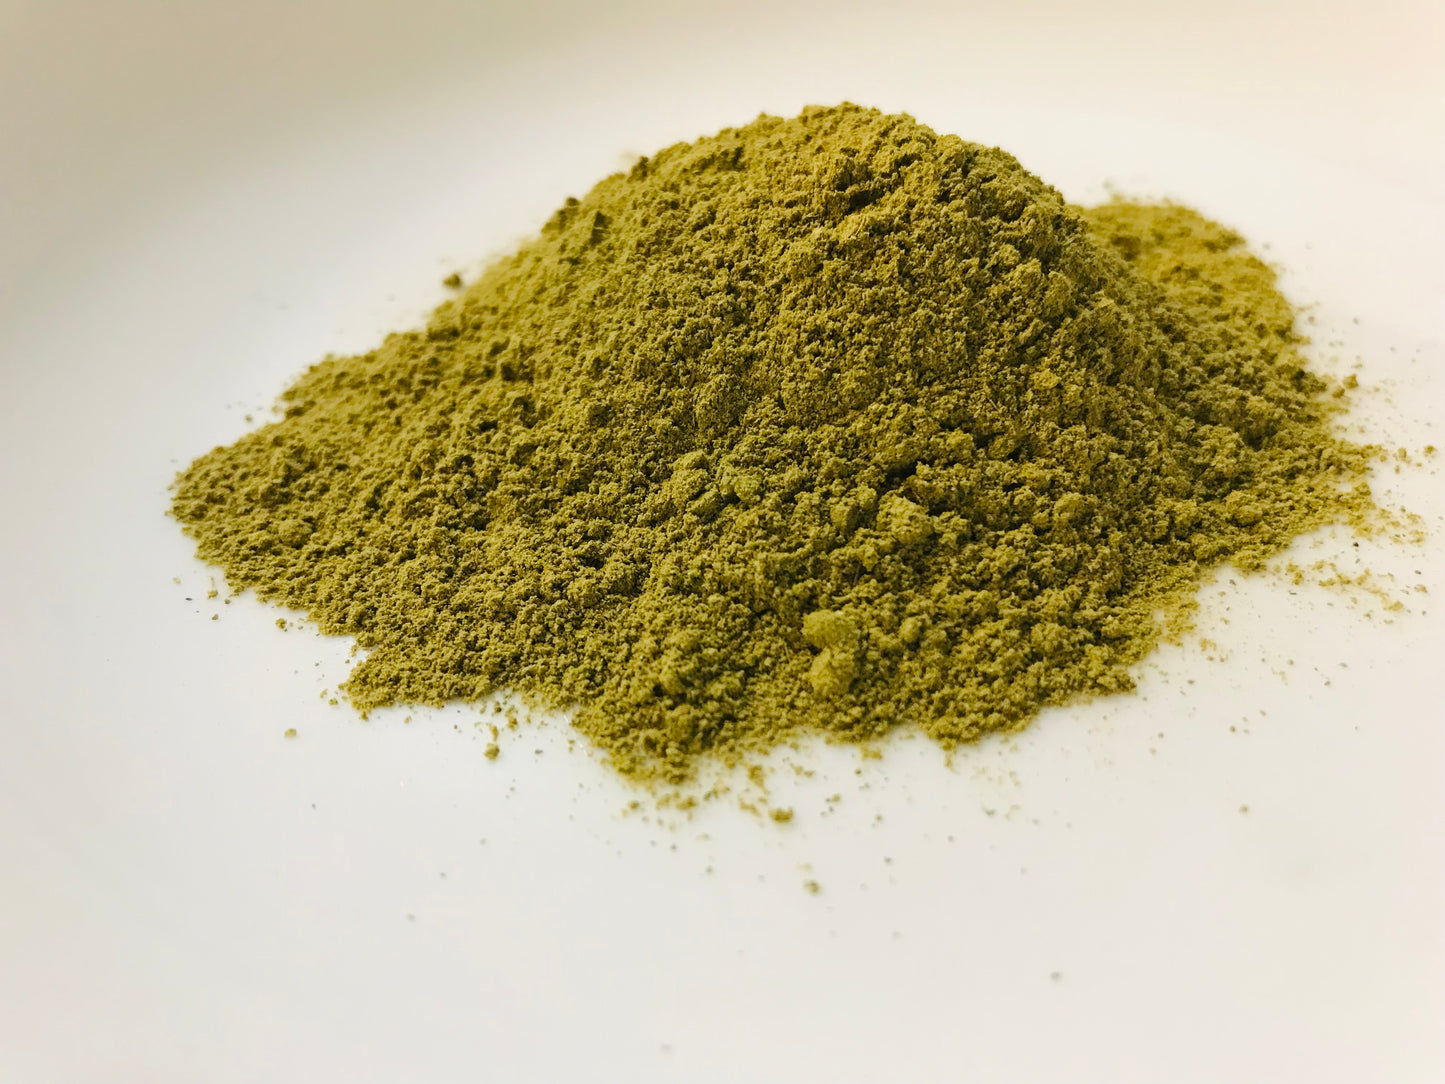 Senna Leaf Powder